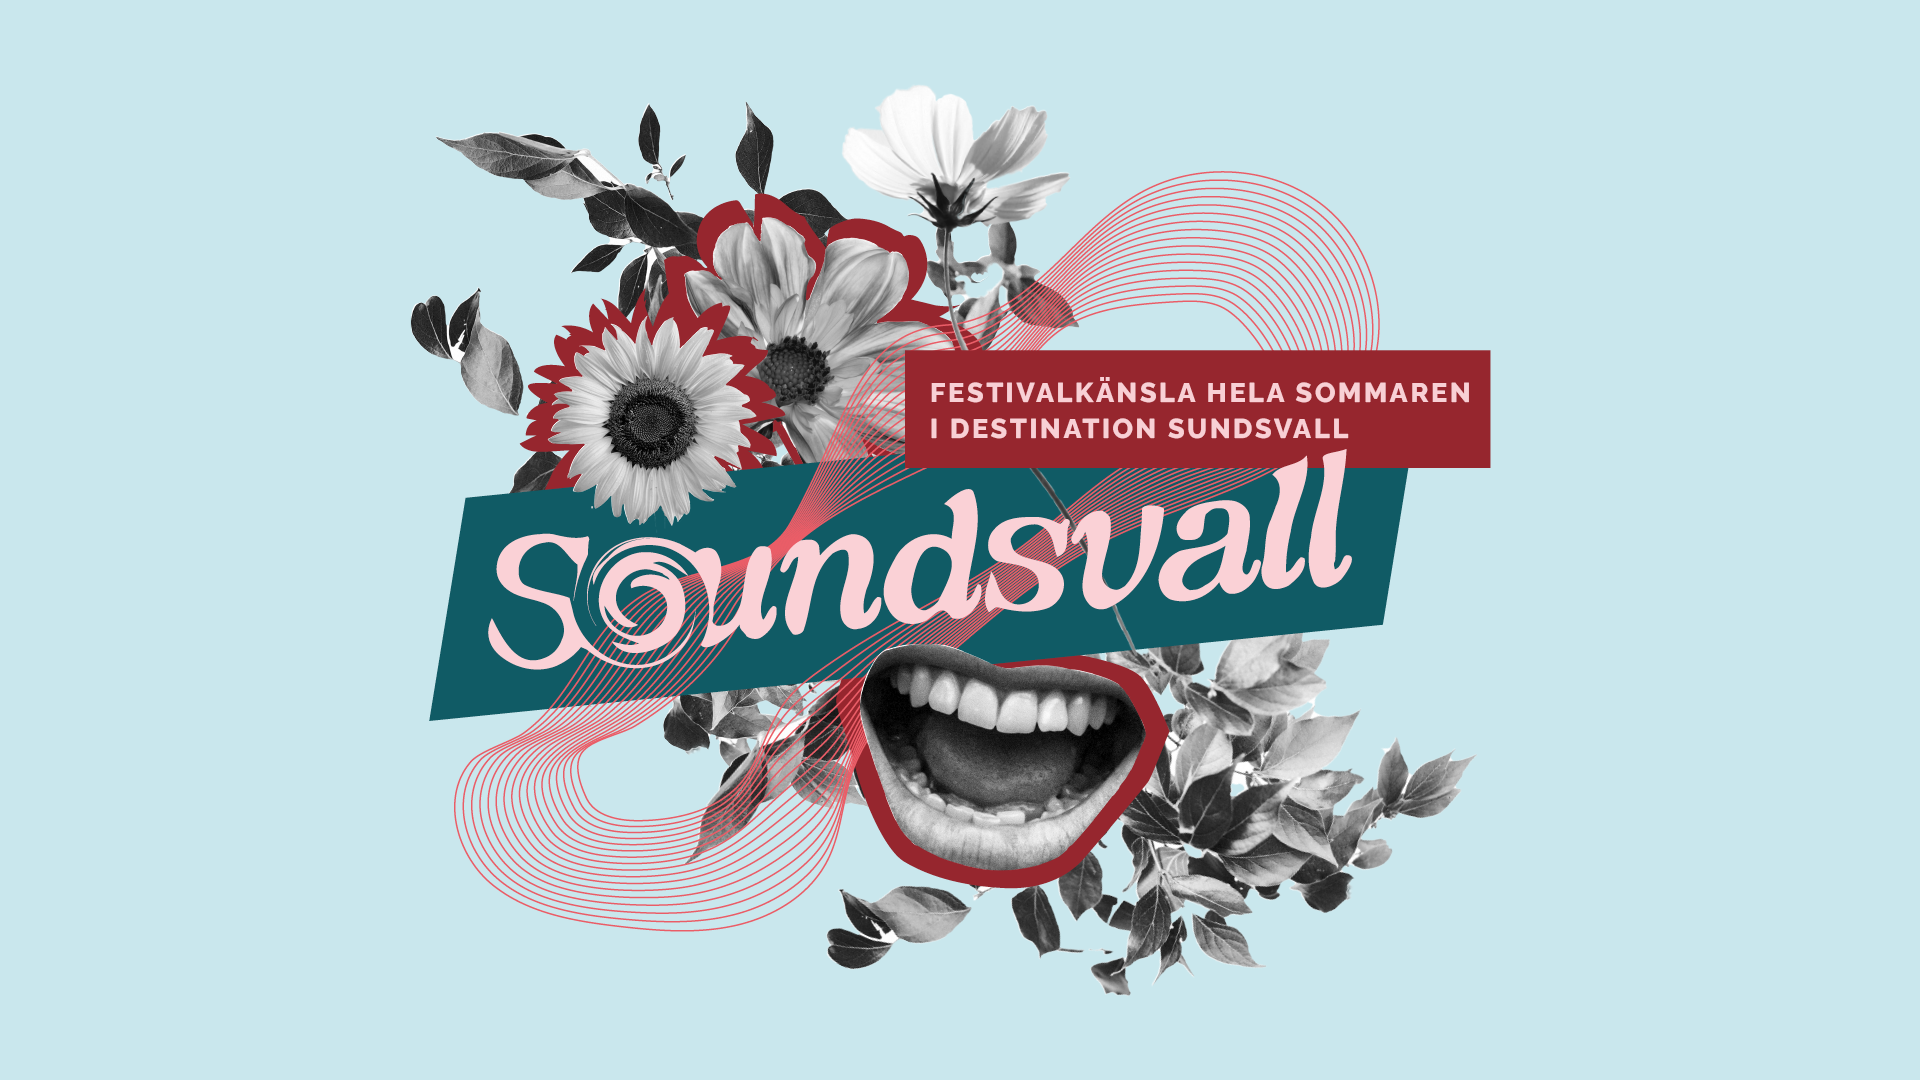 Bild av en illustration av blommor och en skylt där det står Soundsvall, under skylten är en mun som gapar.